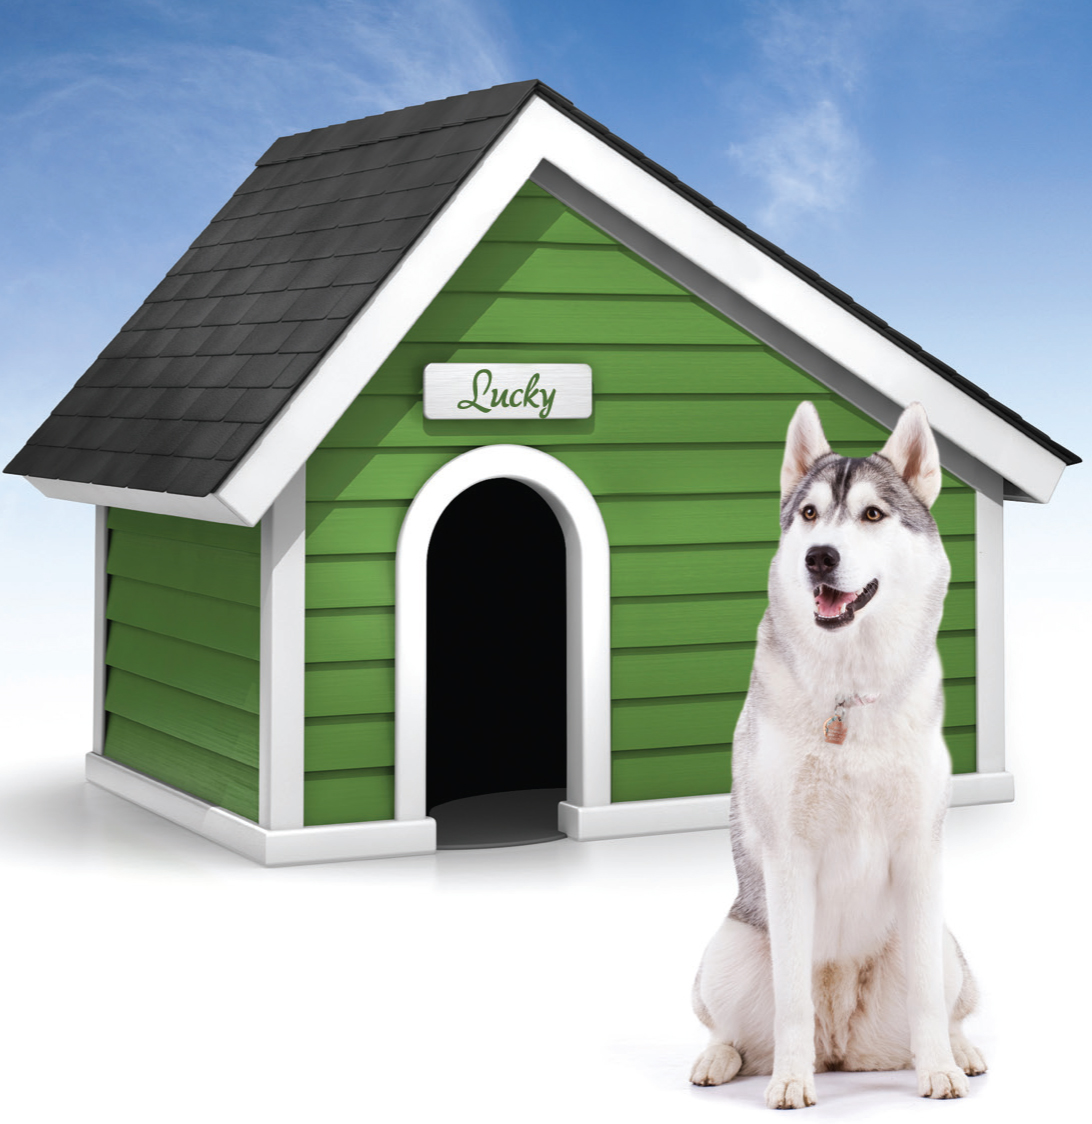 Doghouse demo the dog house. Будка для собаки хаски. Дом для собаки. Красивые собачьи будки. Собака с конурой.